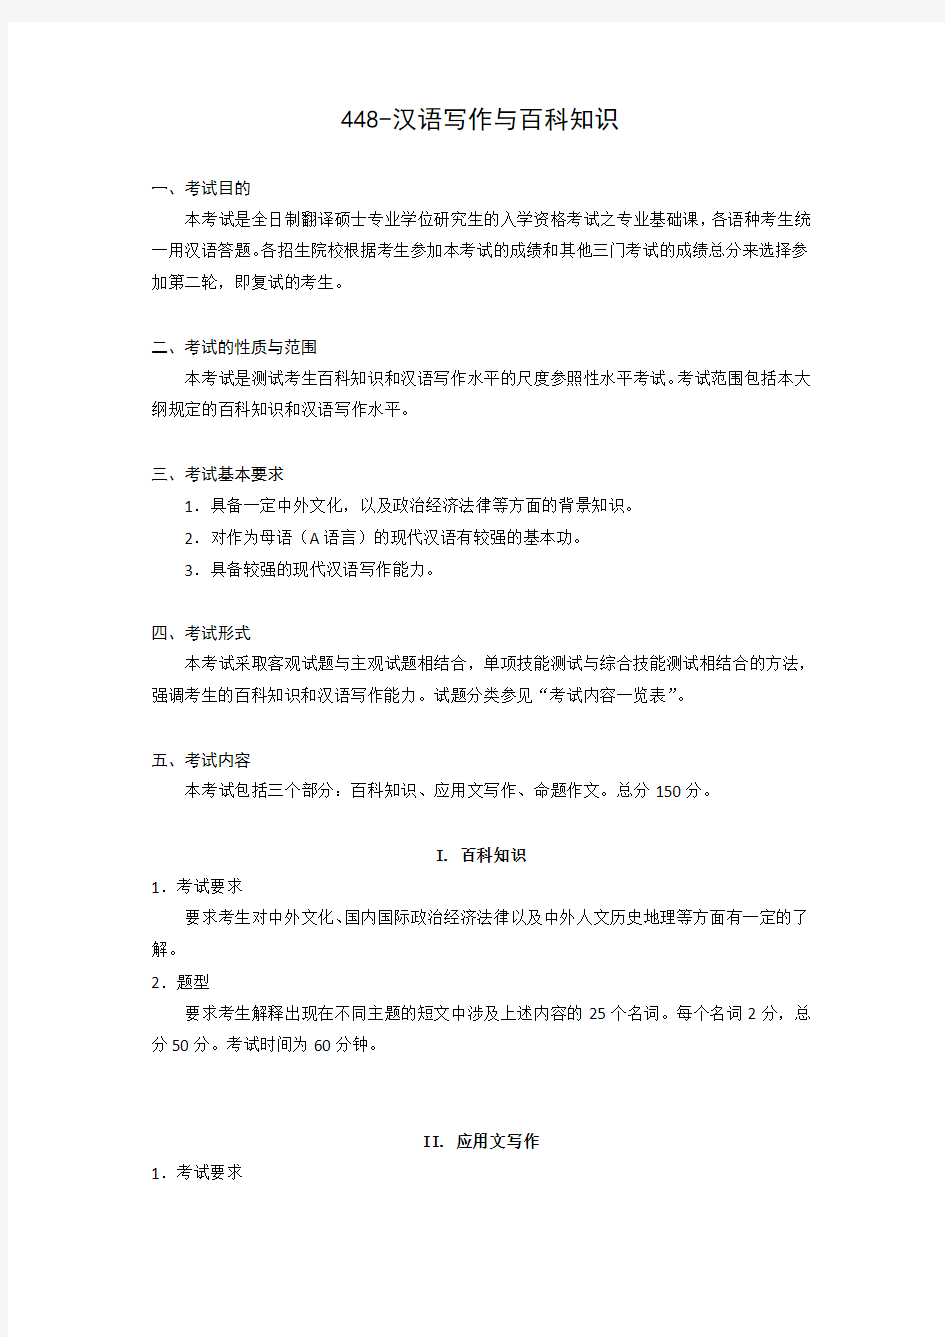 448汉语写作与百科知识  Shandong University.pdf